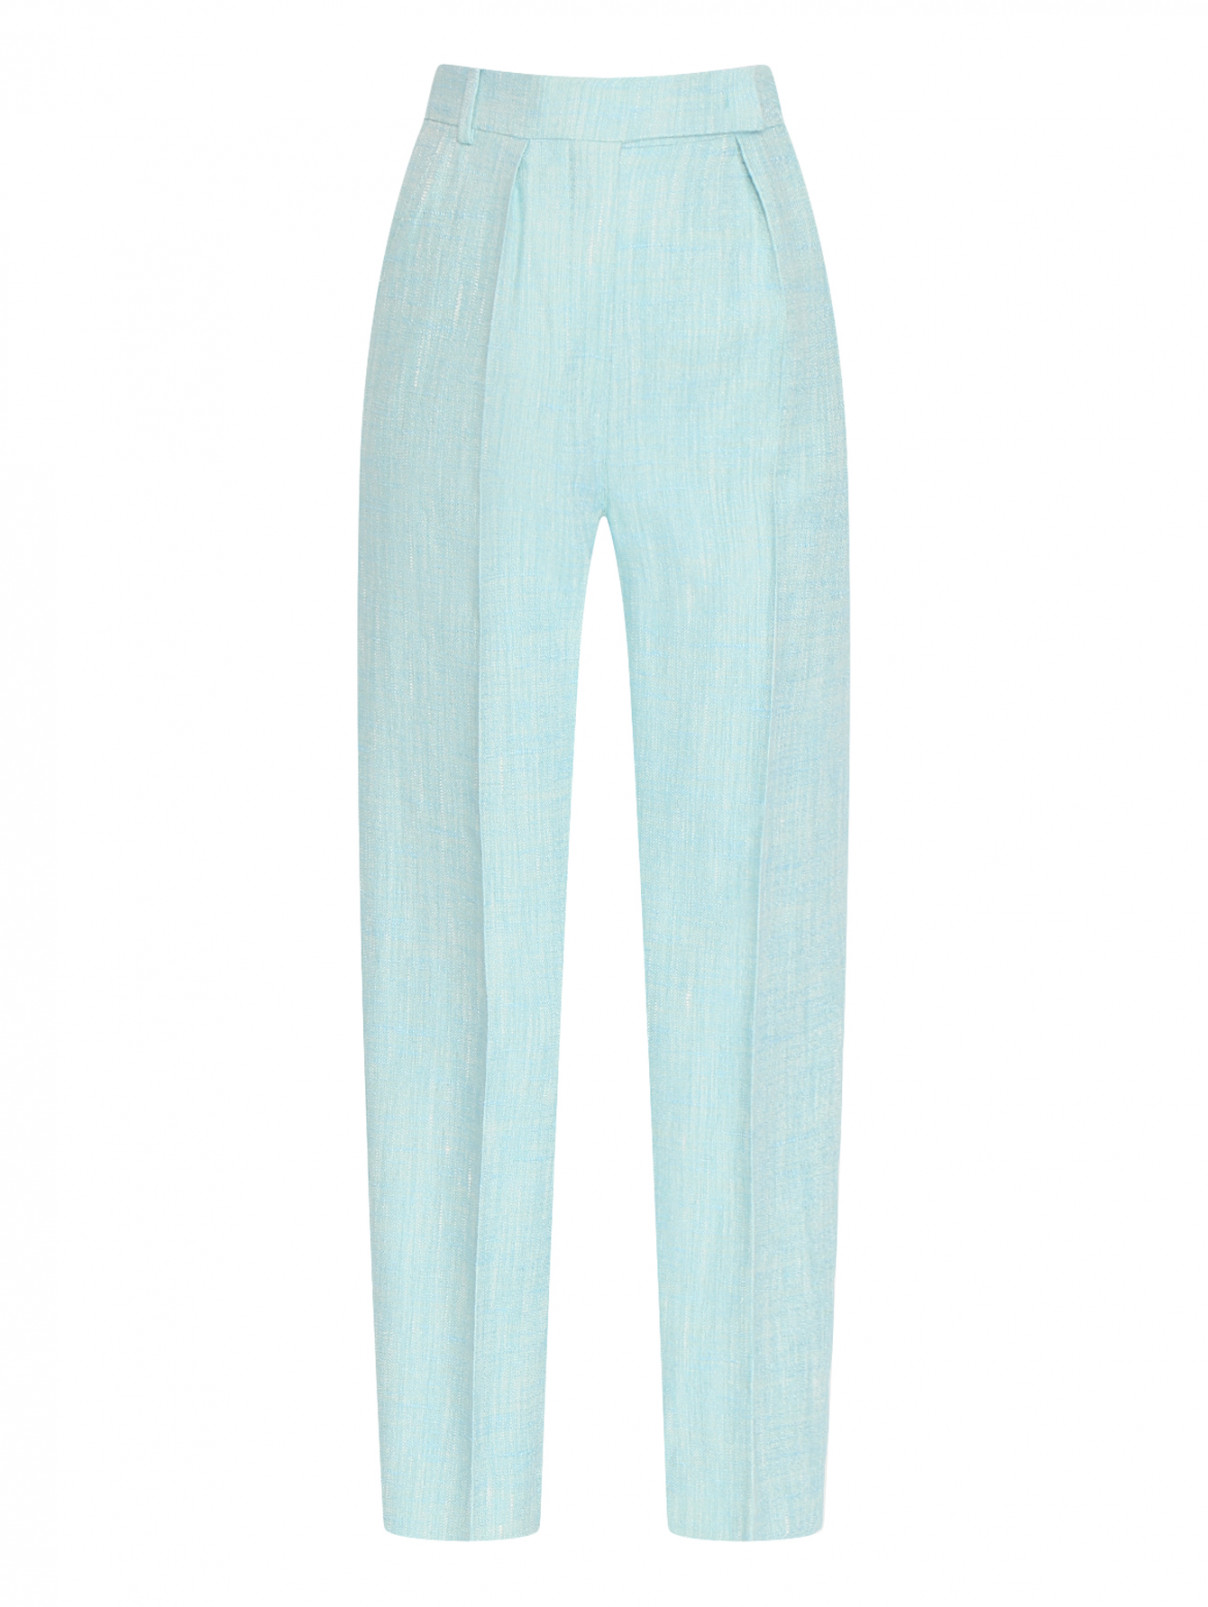 Прямые брюки из шелка и льна Max Mara  –  Общий вид  – Цвет:  Синий